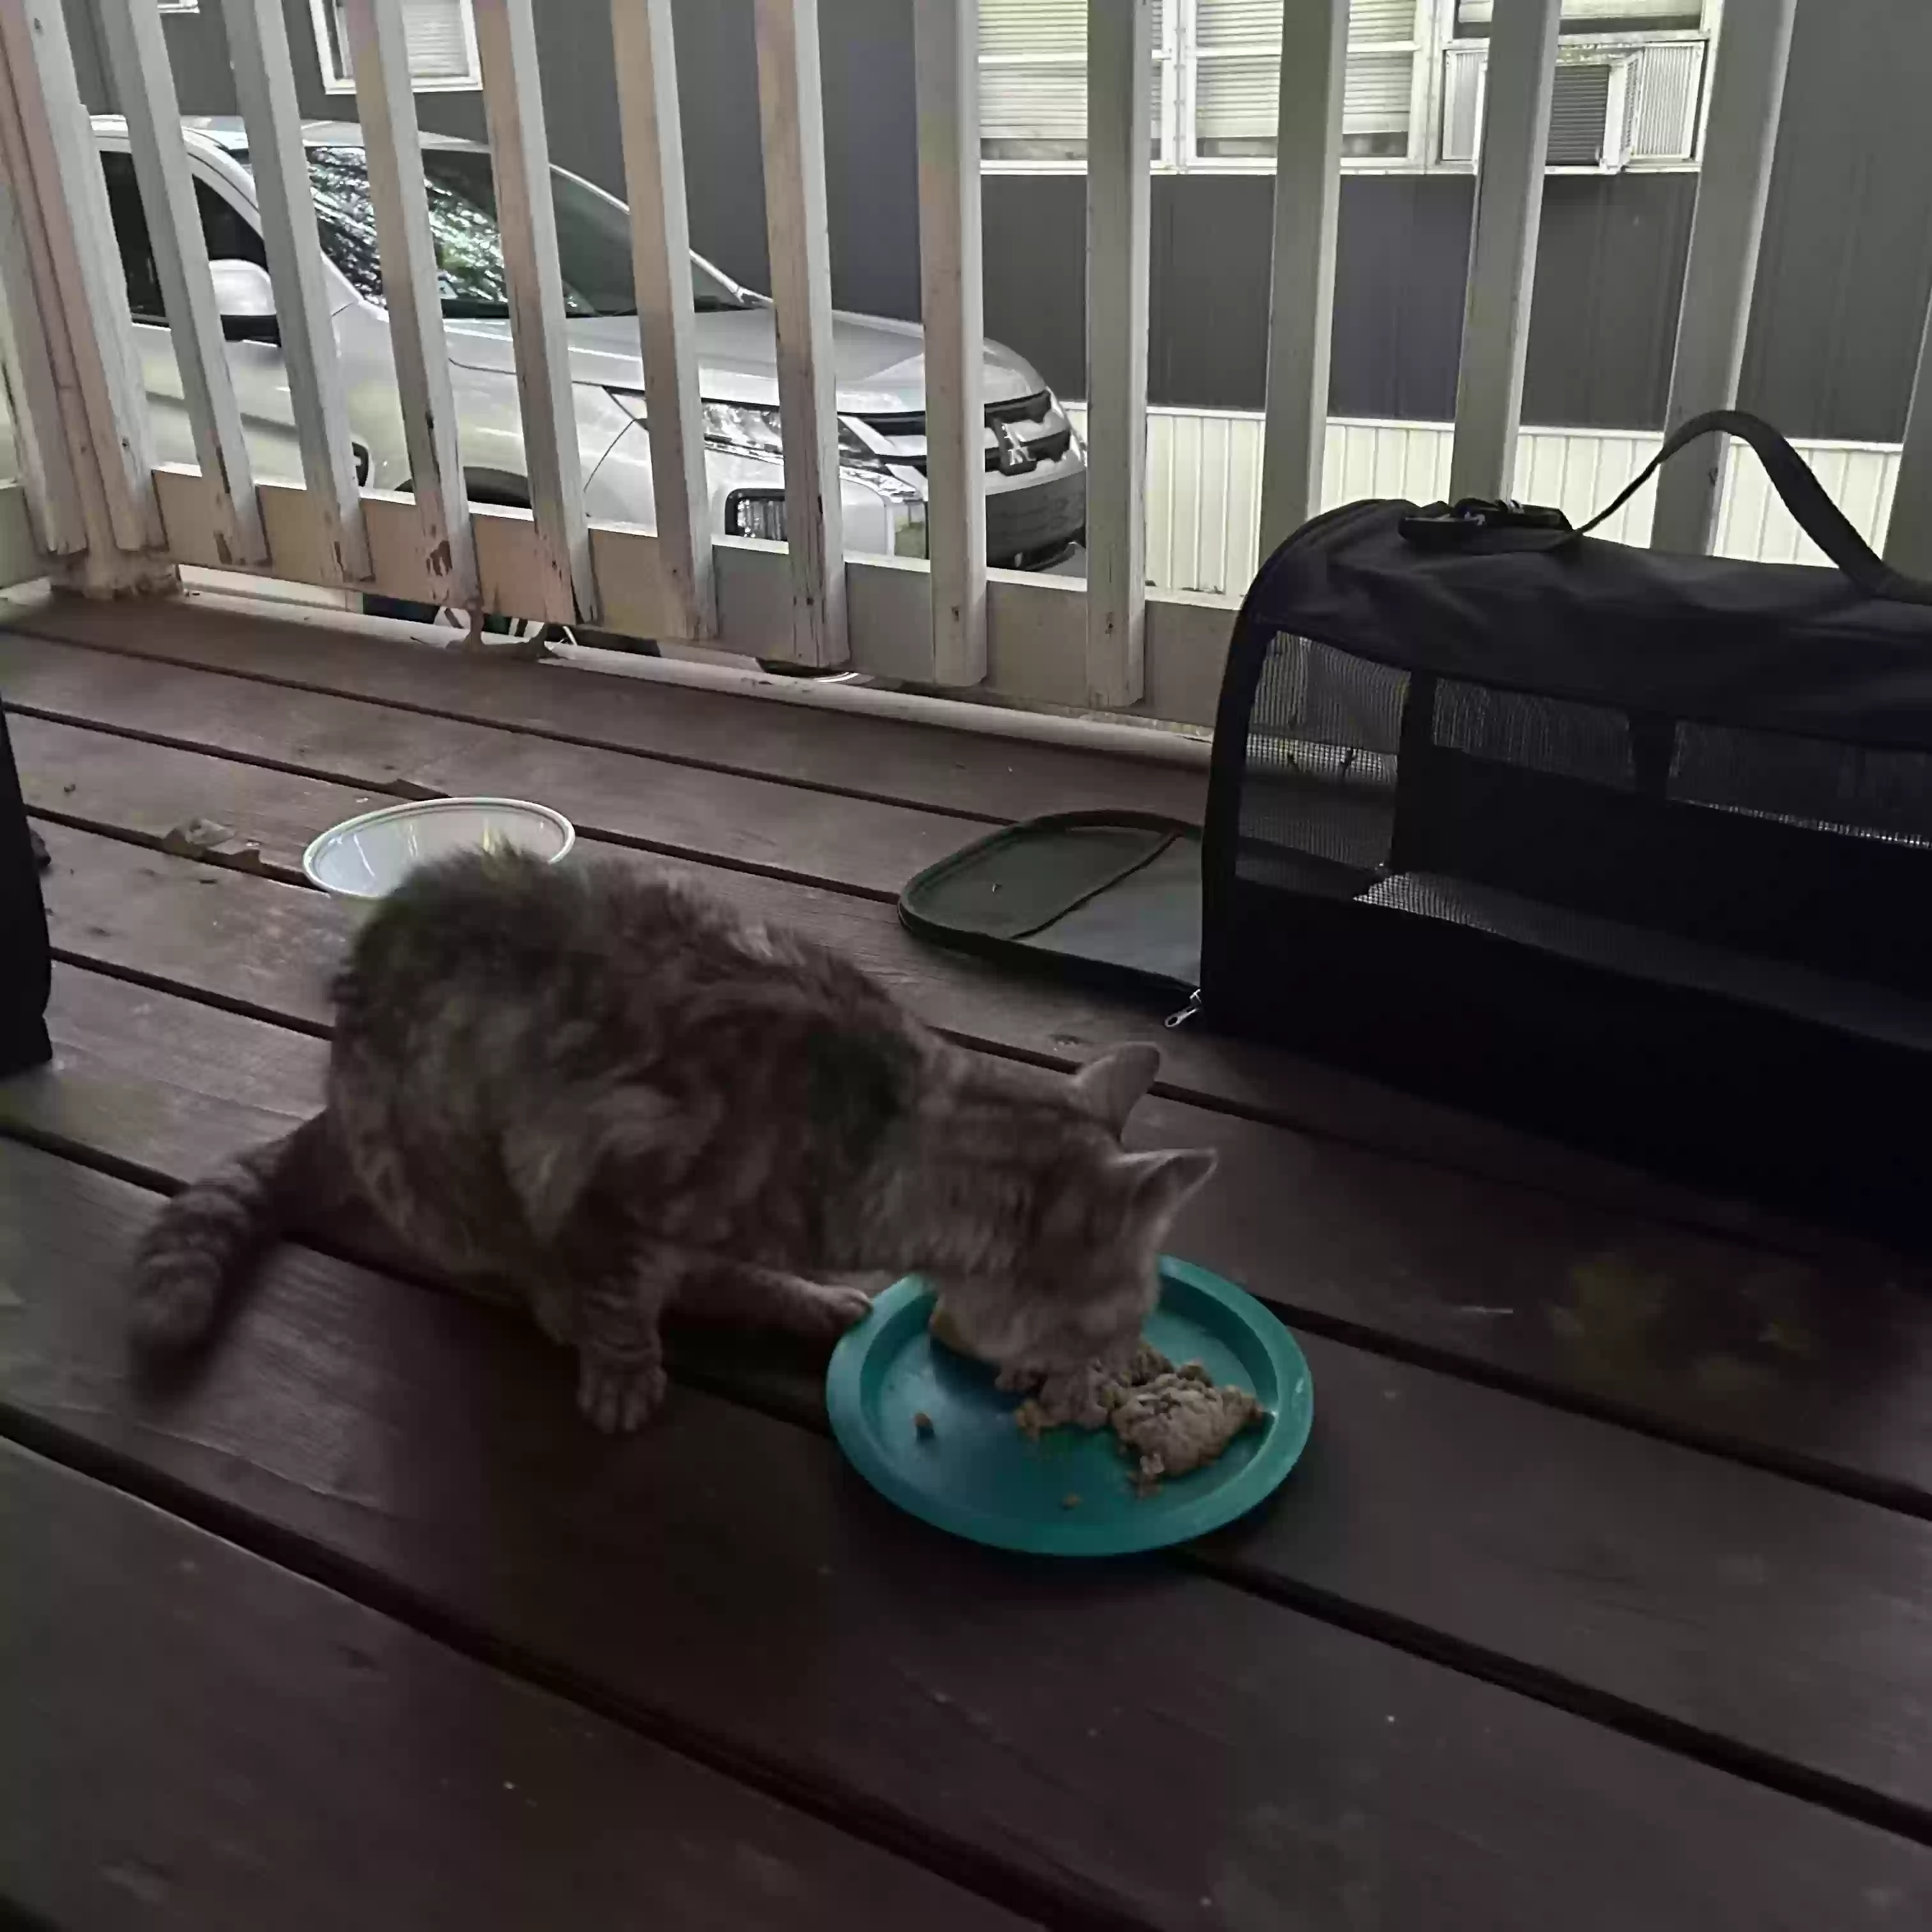 adoptable Cat in Atlanta,GA named Kitty